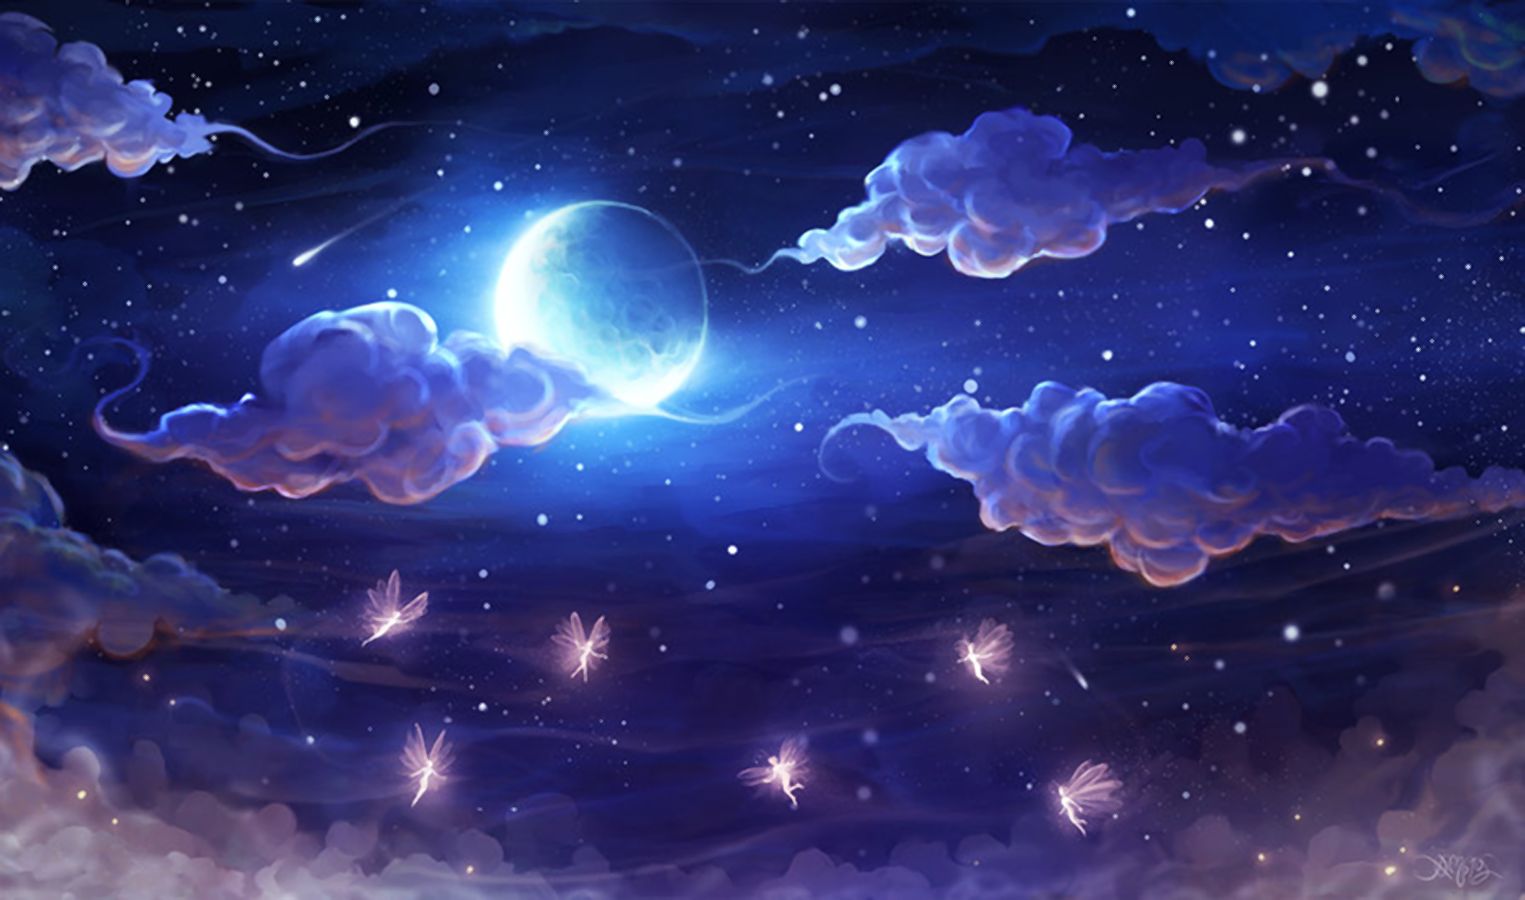 Скачать обои бесплатно Фэнтези, Небо, Ночь, Облака, Луна, Фея картинка на рабочий стол ПК